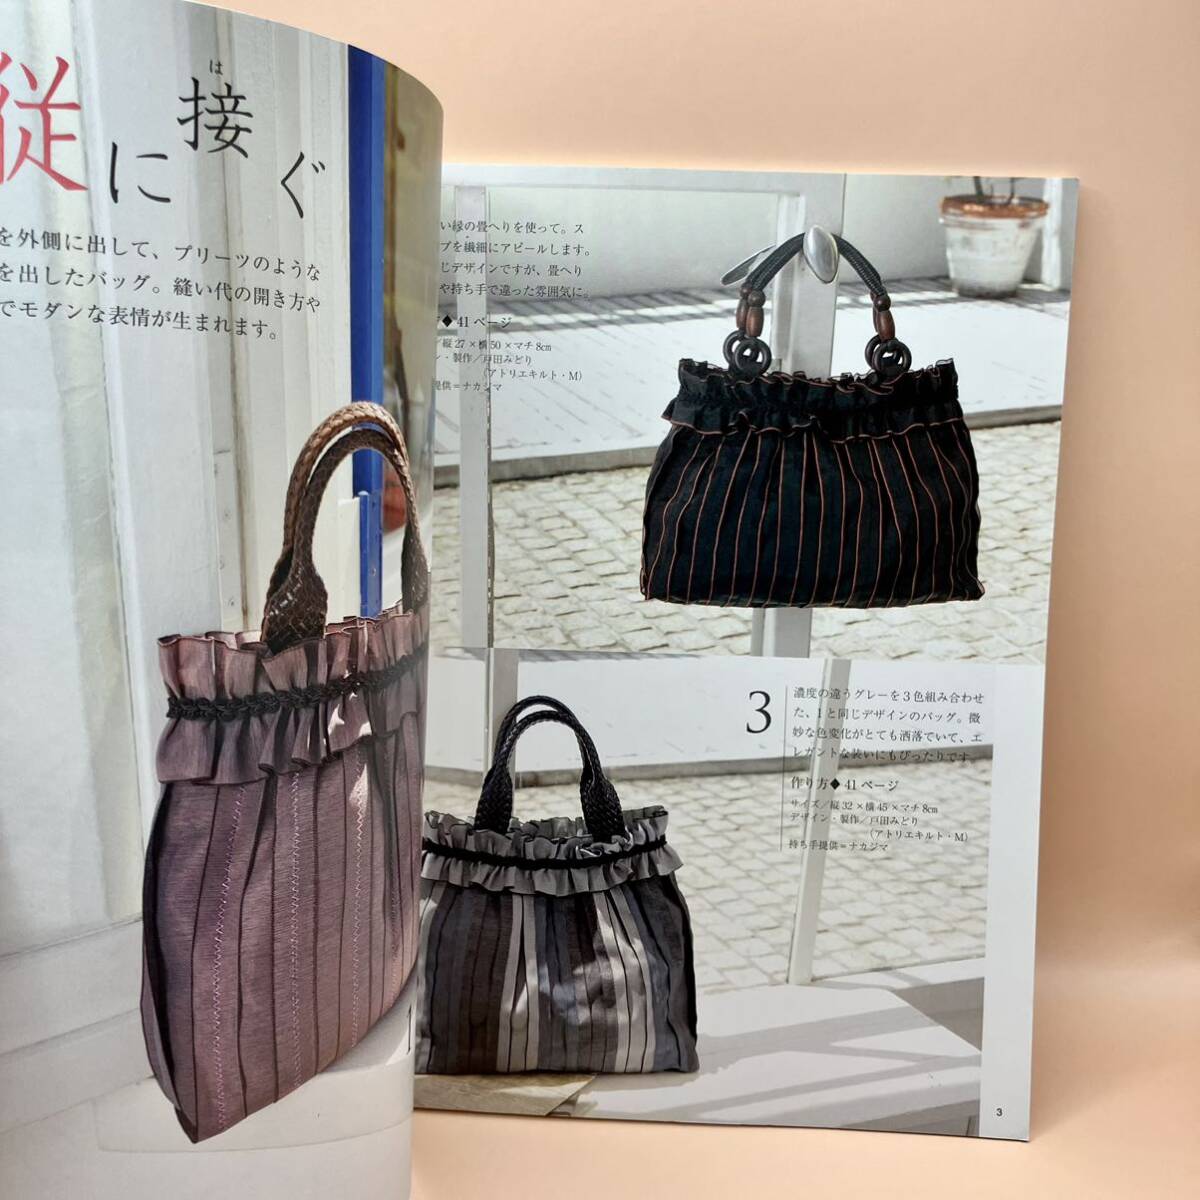 日本の伝統素材畳のへりで作るバッグと小物 : 軽くてお洒落、畳のへりで作る素敵なバッグと小物